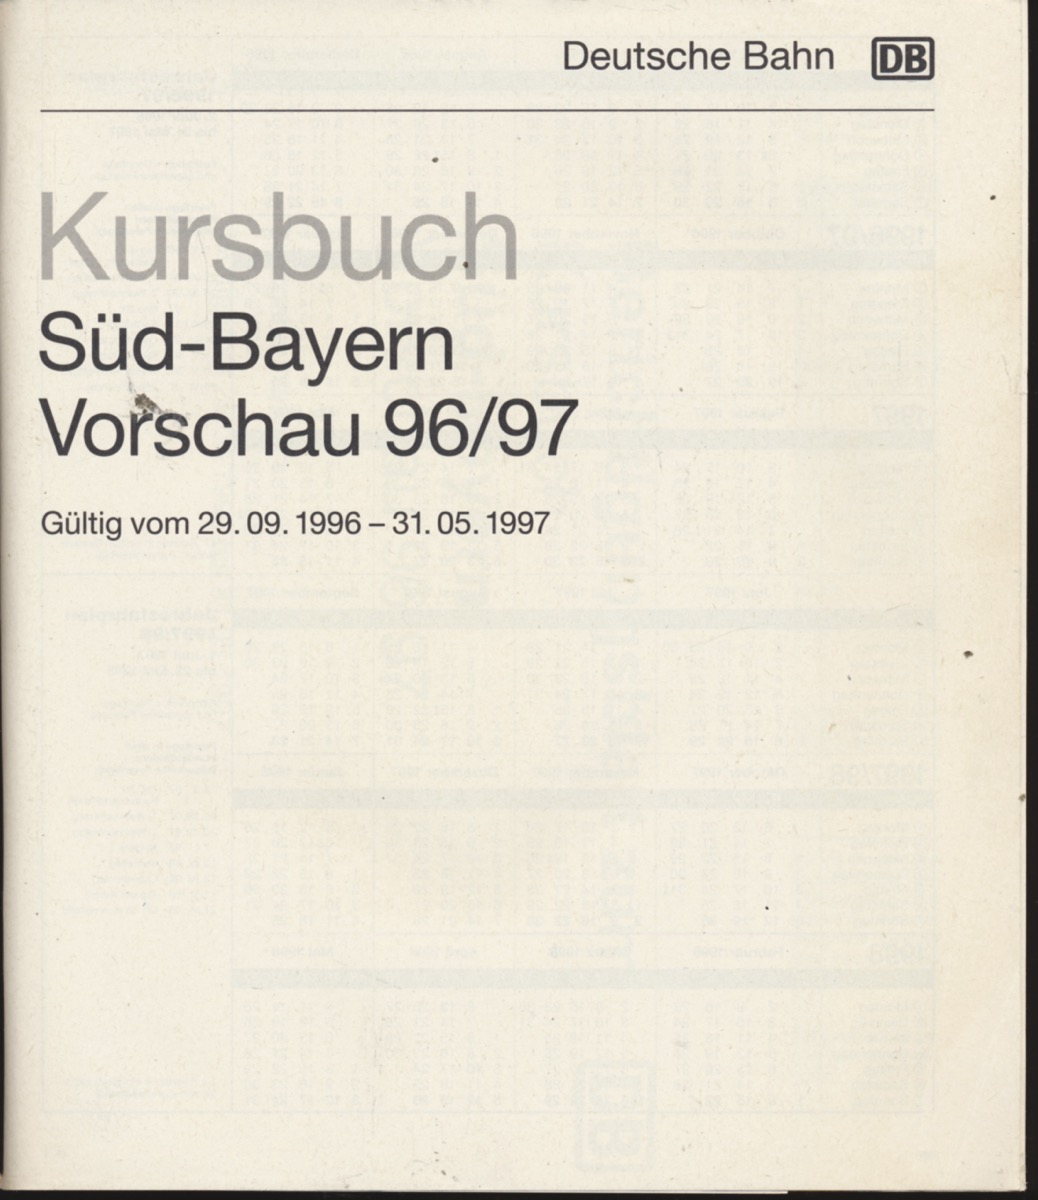 DEUTSCHE BAHN (Hrg.)  Kursbuch Süd-Bayern 1996/97 Winter / Vorschau, gültig vom 29.09.1996 bis 31.05.1997. 